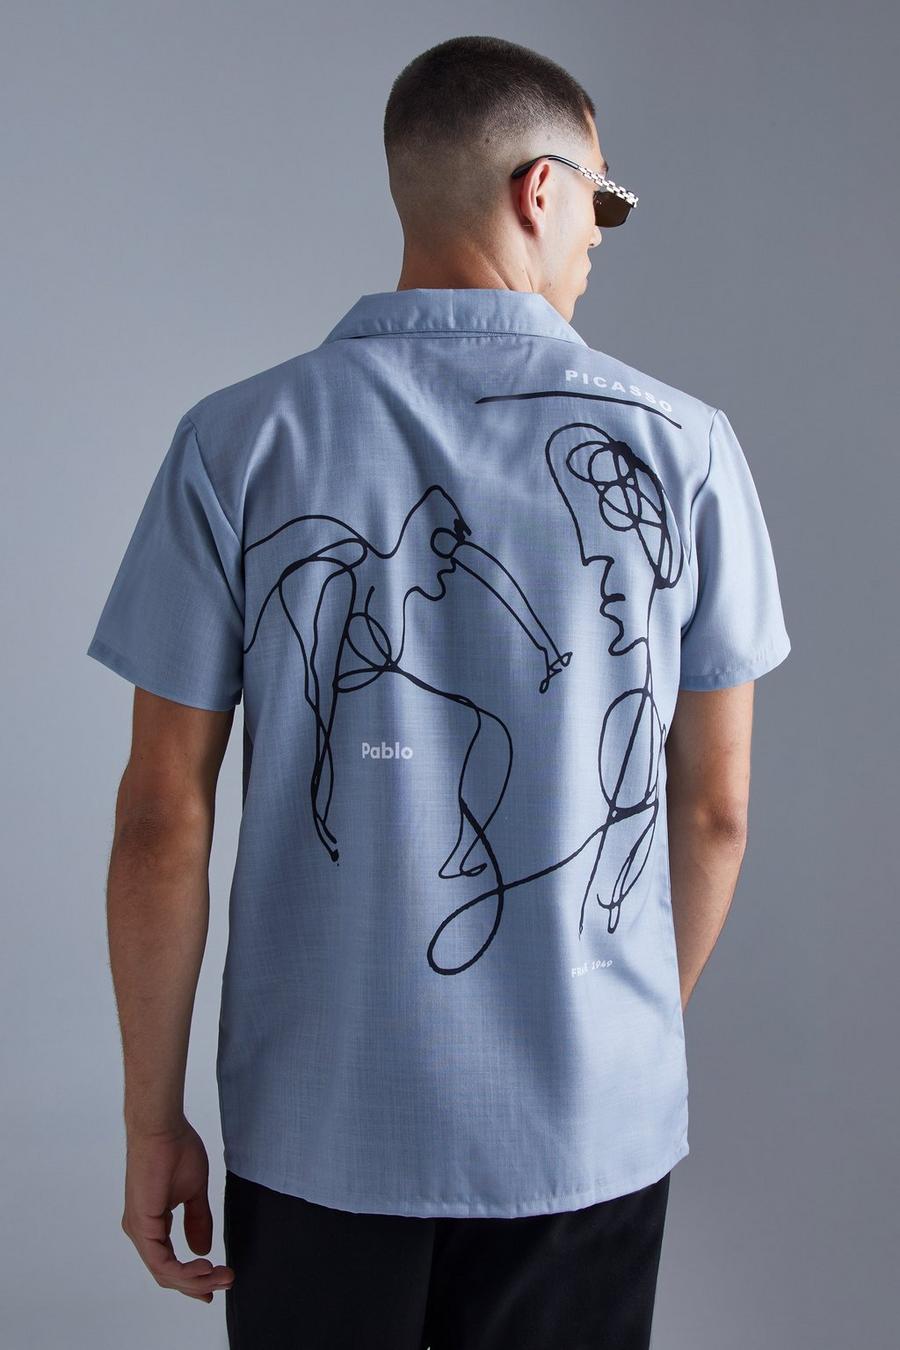 Kurzärmliges Hemd mit Pablo Picasso Print, Grey